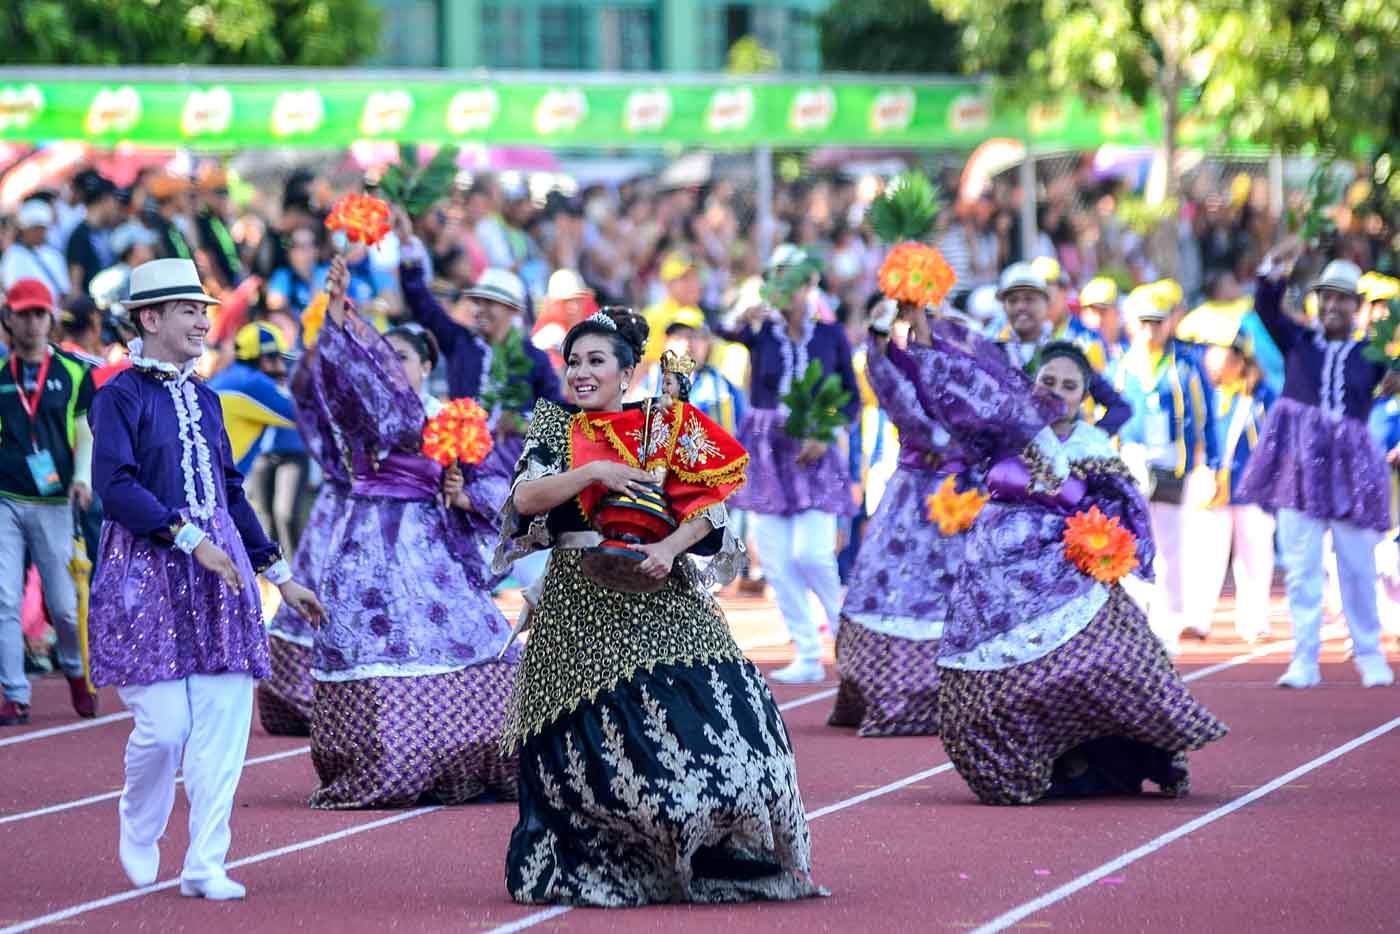 IN PHOTOS: A colorful 2016 Palarong Pambansa opening